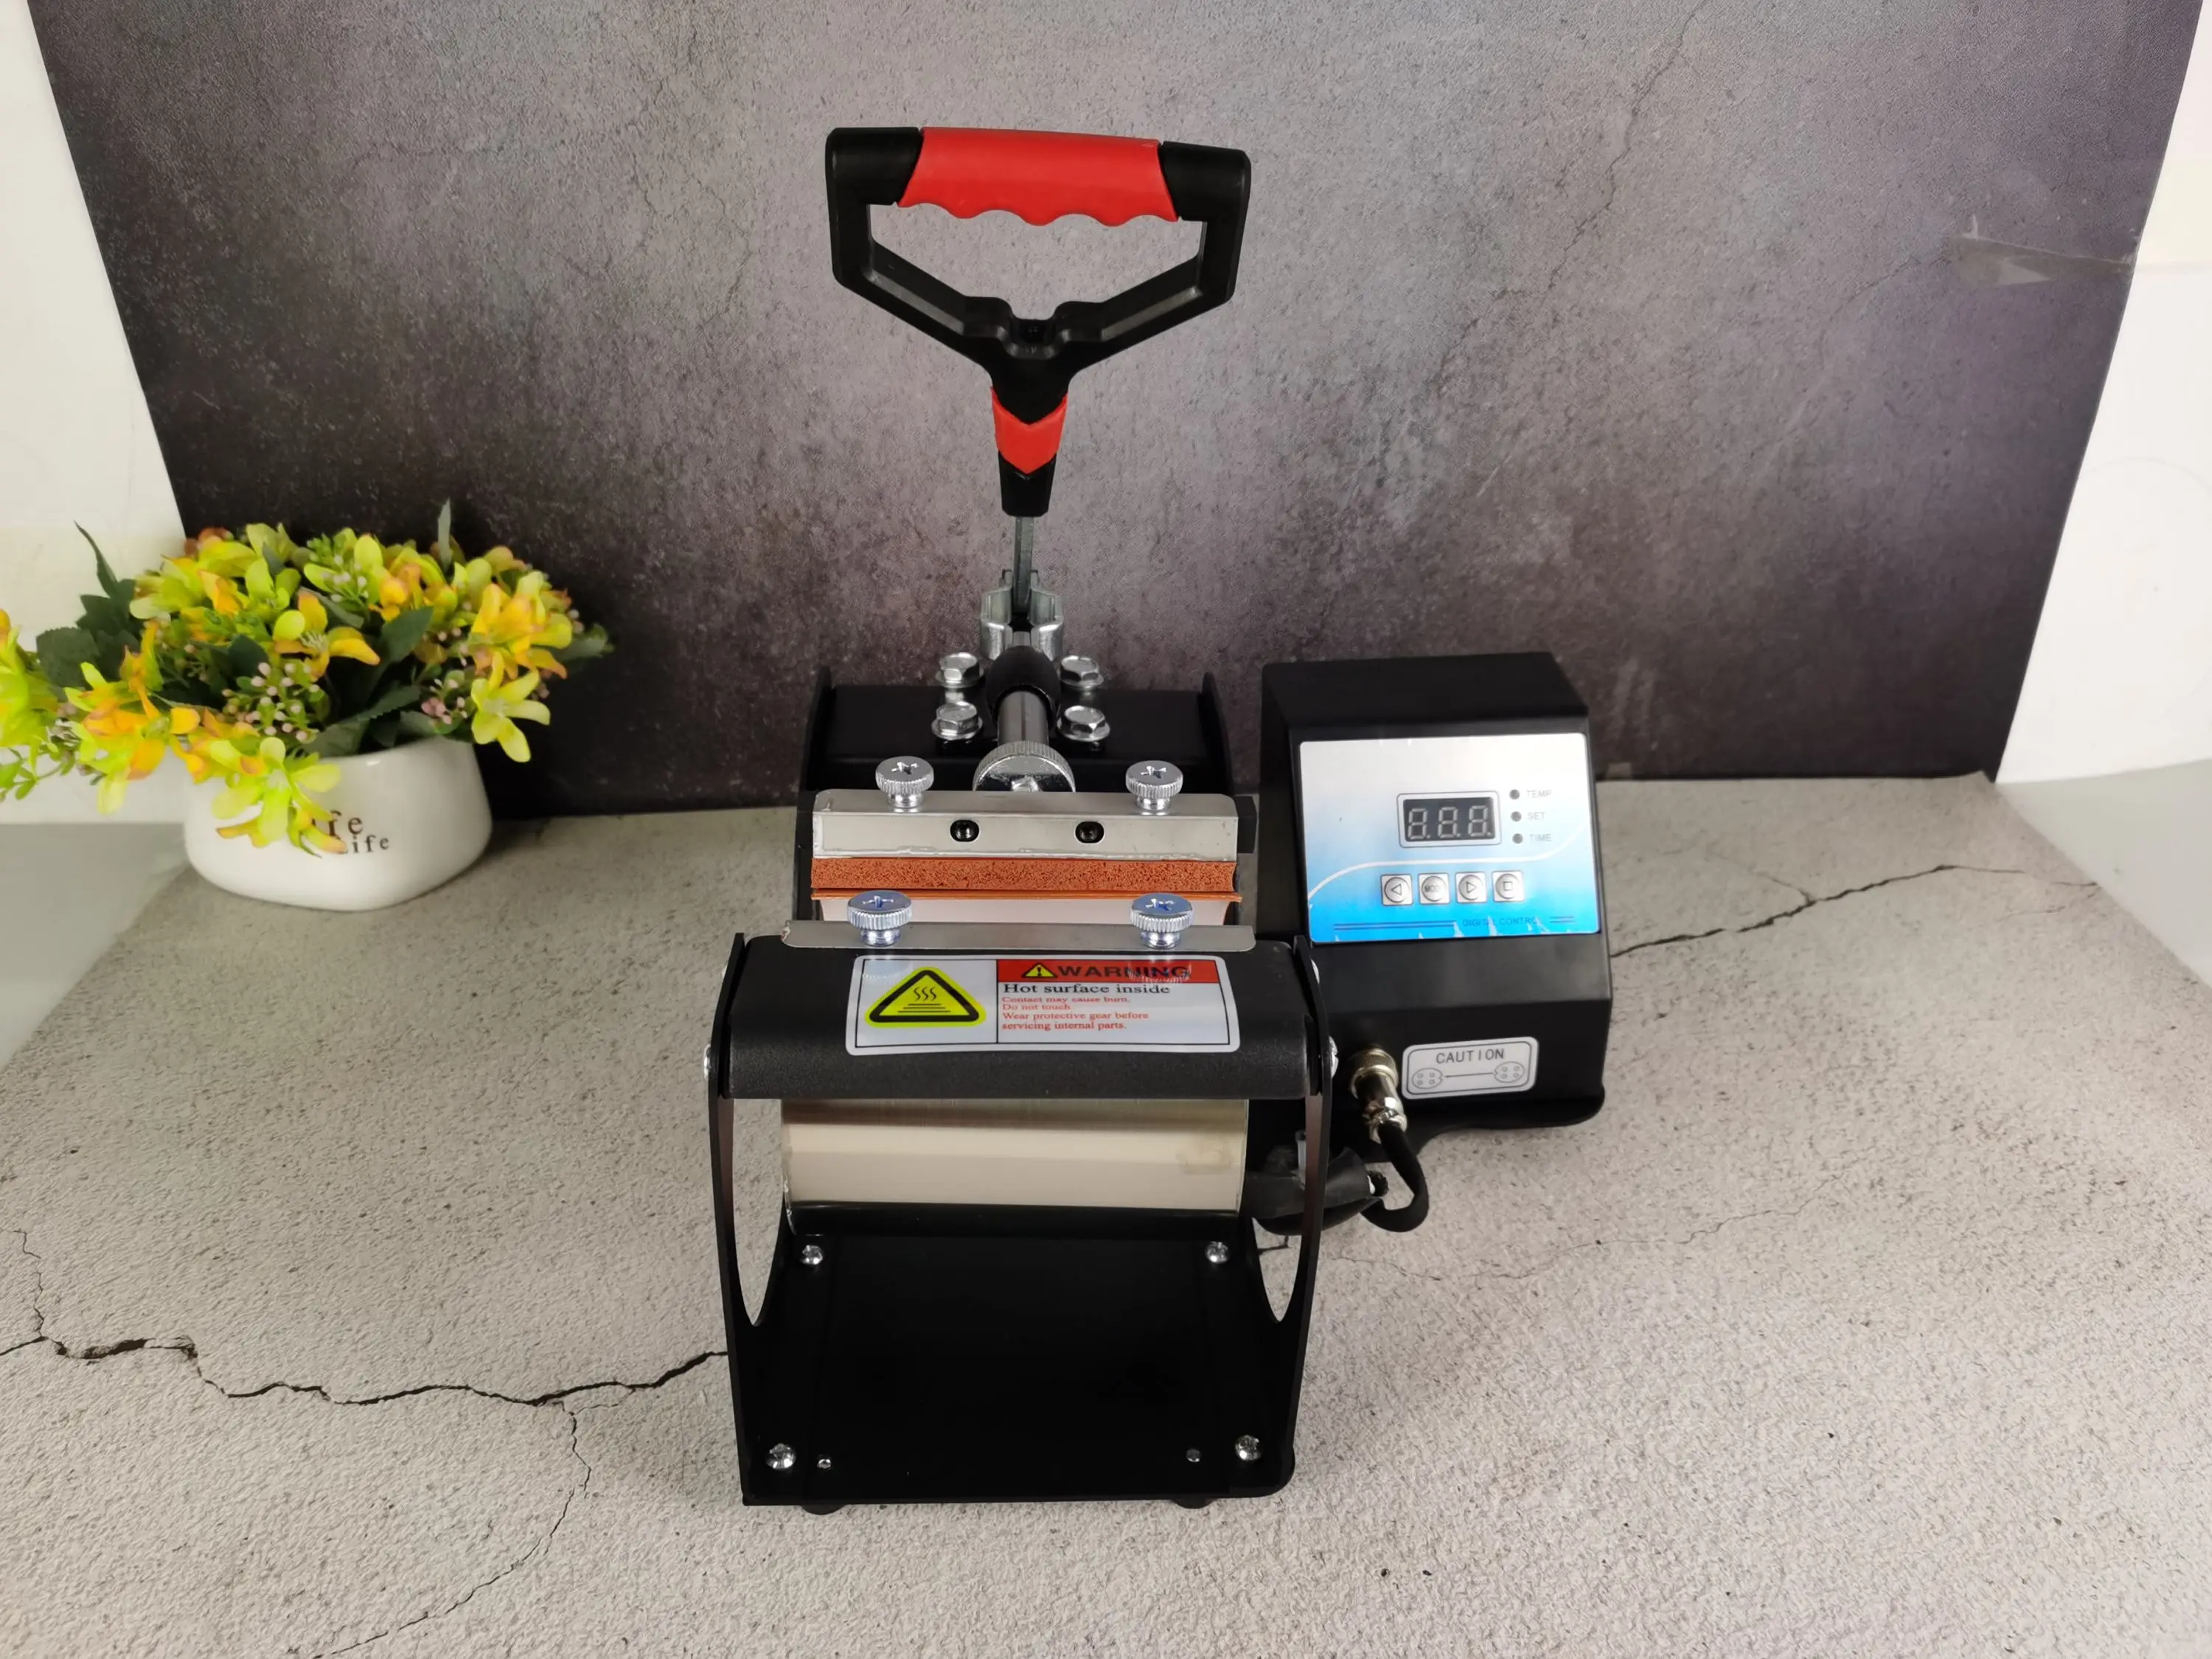 ספל הקש מכונת ספל חום העיתונות מדפסת דיגיטלית ספל מכונת הדפסה סובלימציה עיתונות חום לספלים כוסות דפוס 11OZ - 2